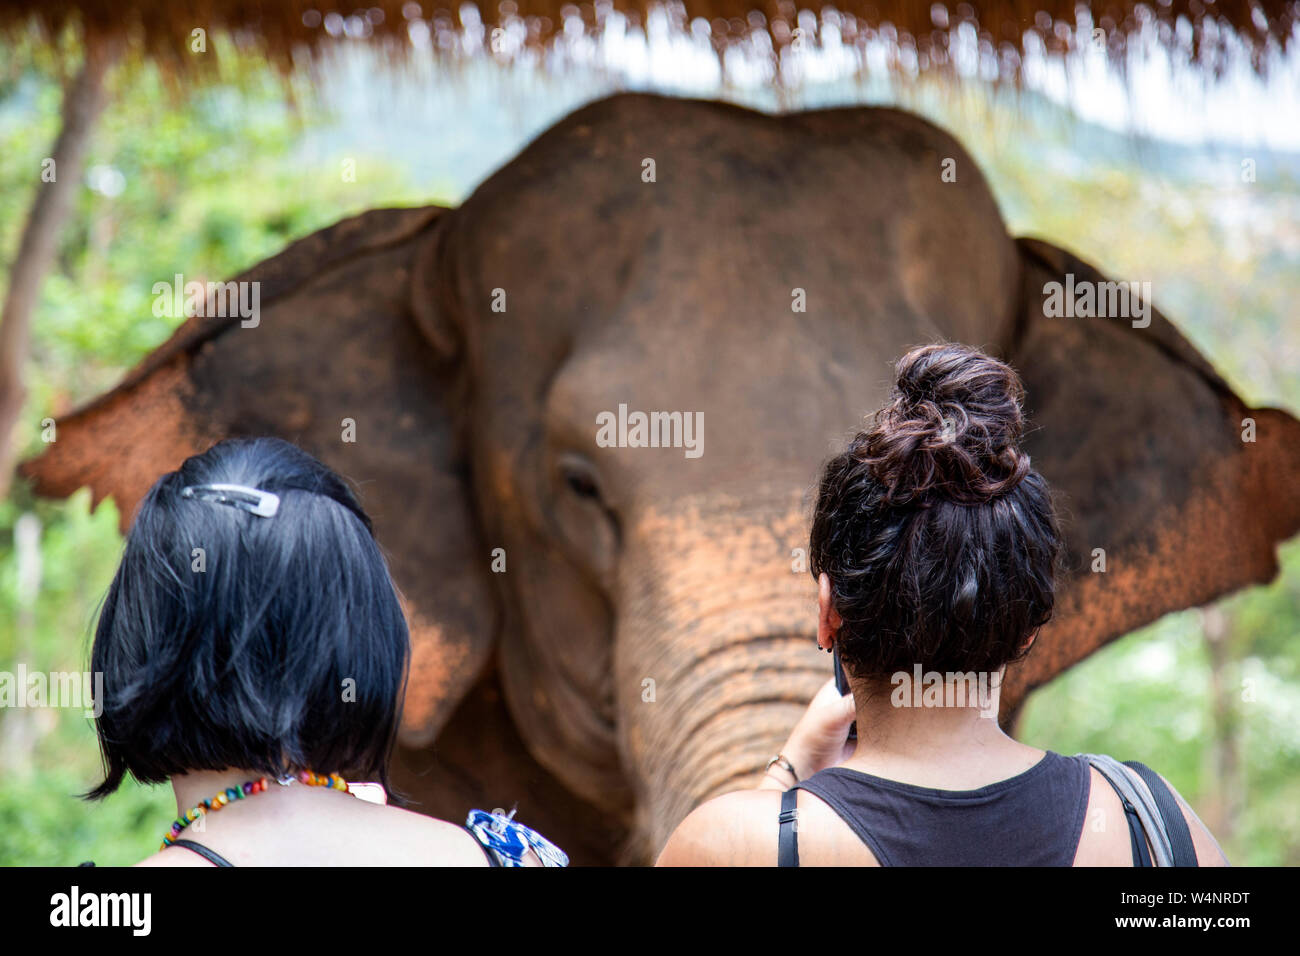 Deux femmes visitant un éléphant blessé dans un sanctuaire d'éléphants Banque D'Images